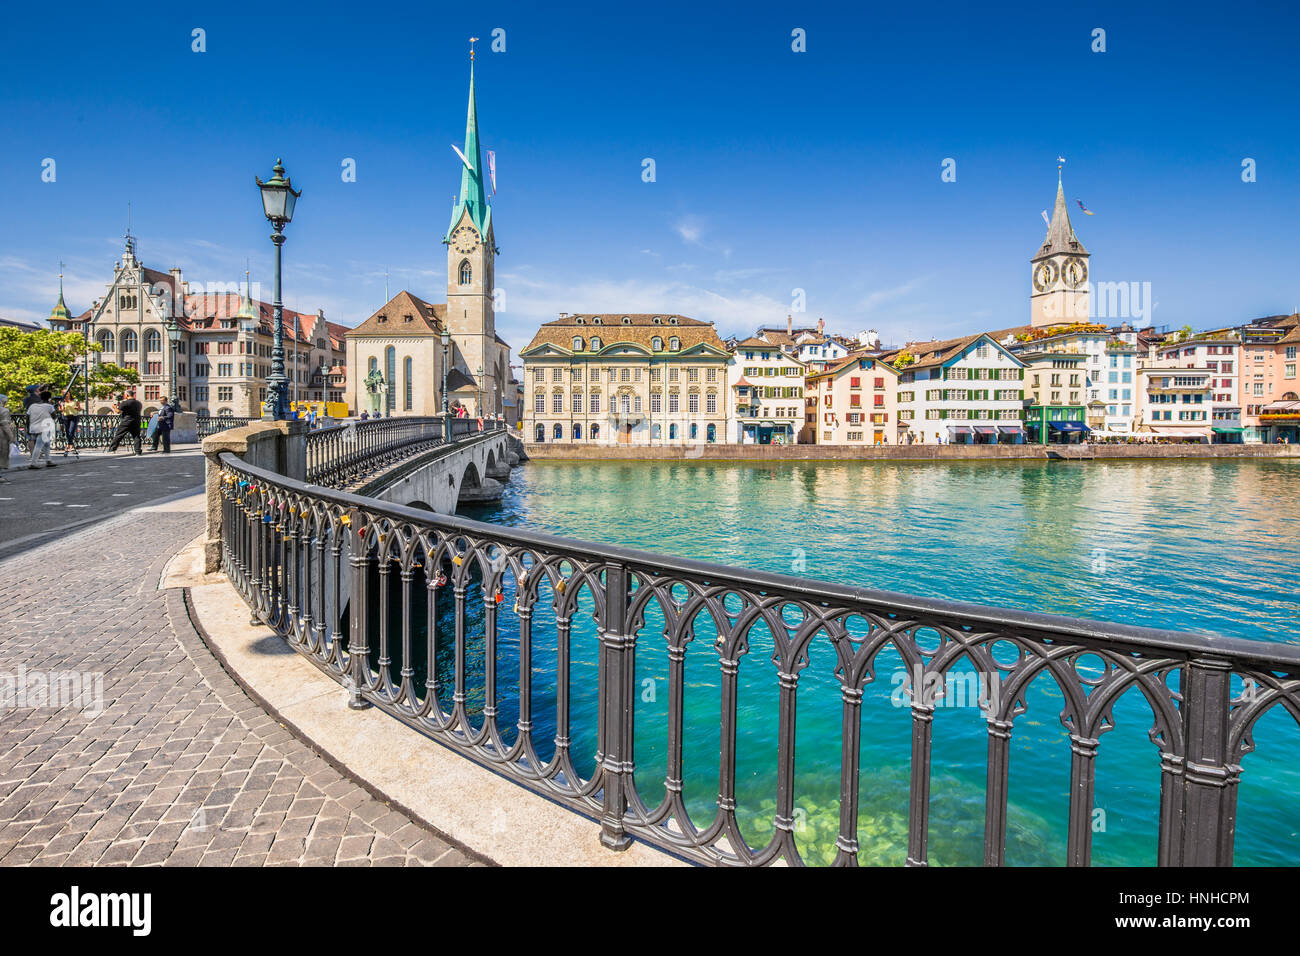 Centro histórico de la ciudad de Zurich con la famosa iglesia Fraumunster y Munsterbucke cruzar el río Limmat, Cantón de Zurich, Suiza Foto de stock